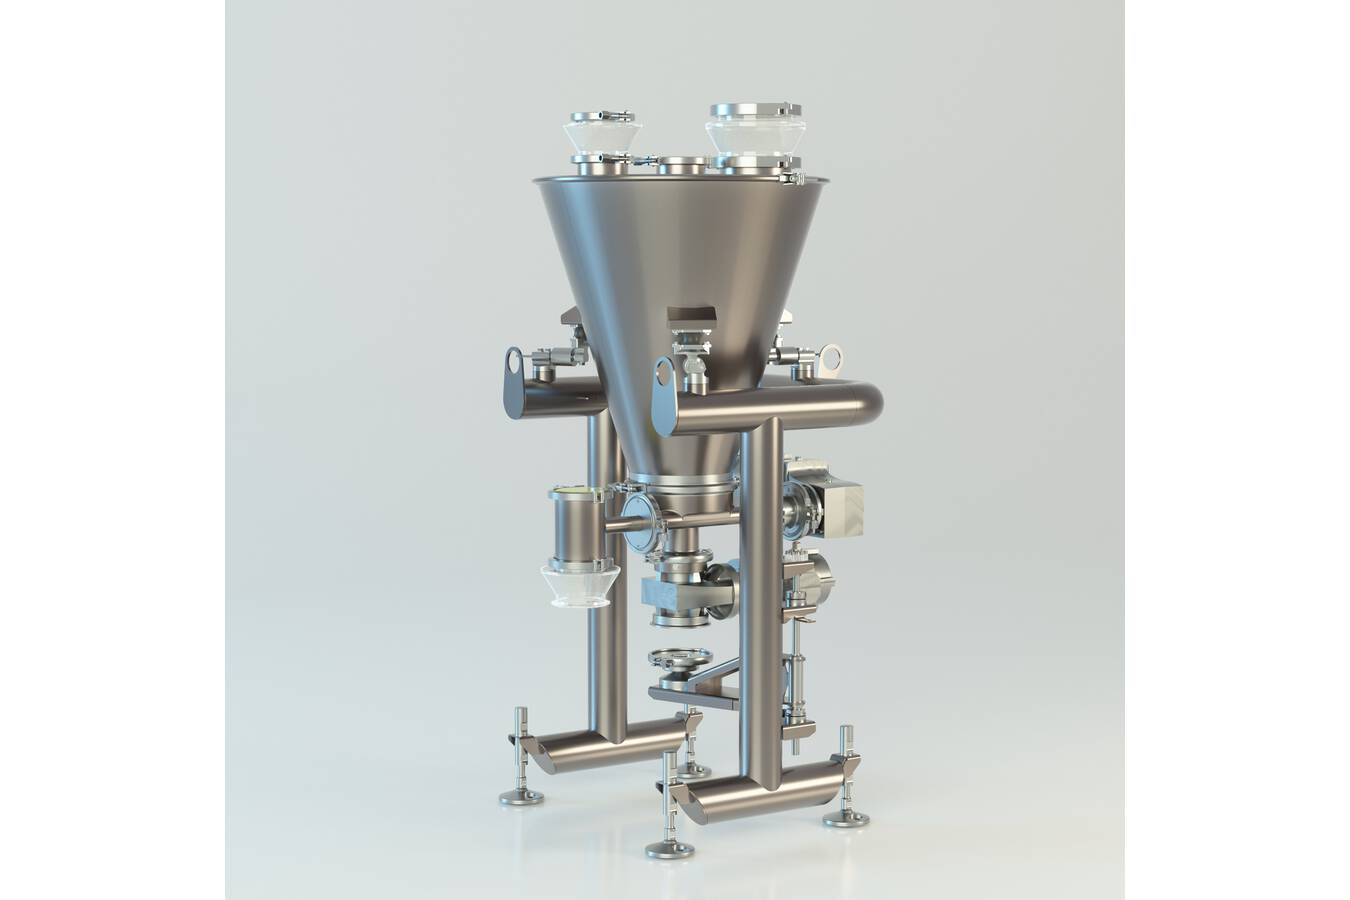 CS+ eignet sich für kleine Mengen ab 1 Liter pro Stunde sowie hohe Dosierleistungen von bis zu 5.500 Liter pro Stunde. © Schenck Process